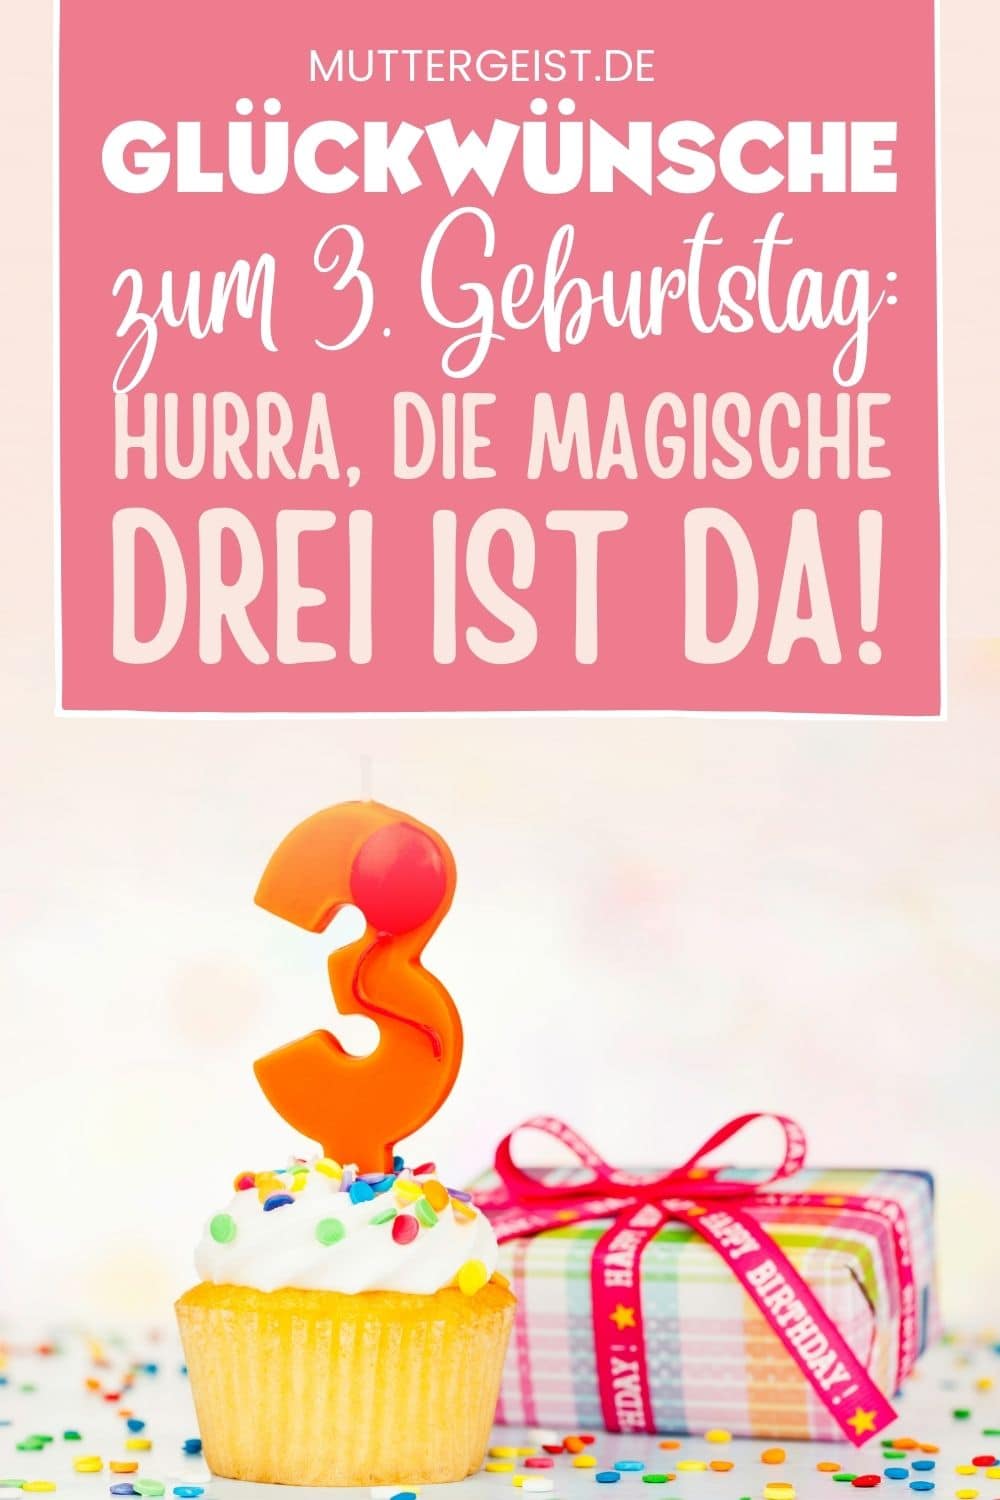 Glückwünsche Zum 3. Geburtstag – Hurra, Die Magische Drei Ist Da! Pinterest